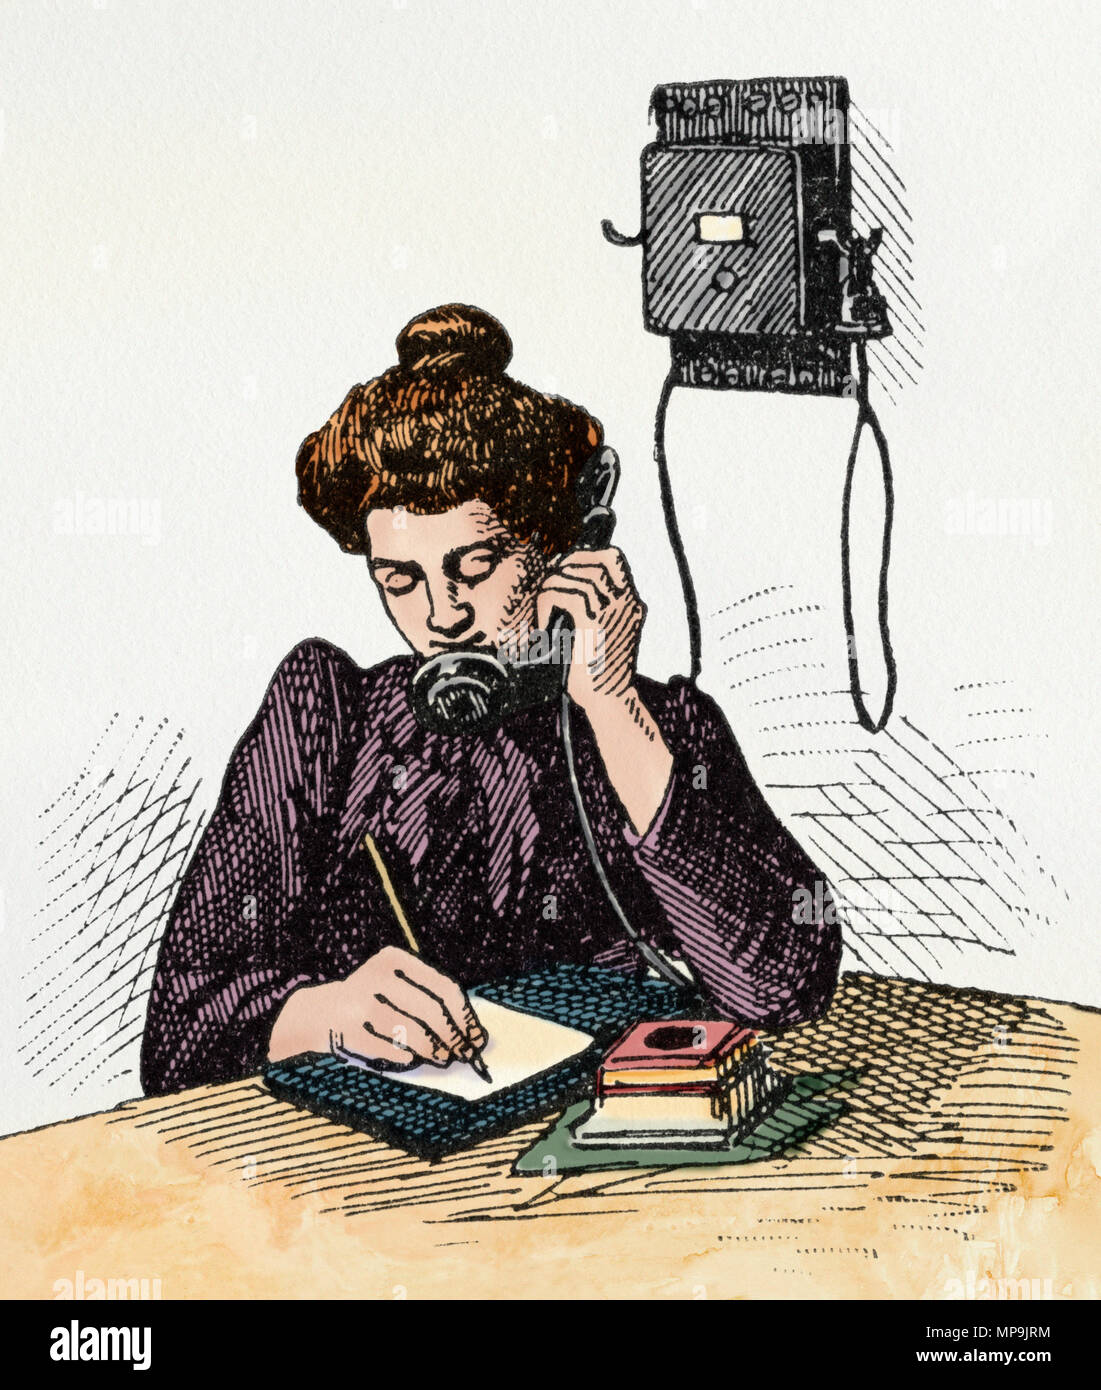 Téléphone tôt combinant l'émetteur et le récepteur, années 1800. Gravure sur bois couleur numérique Banque D'Images